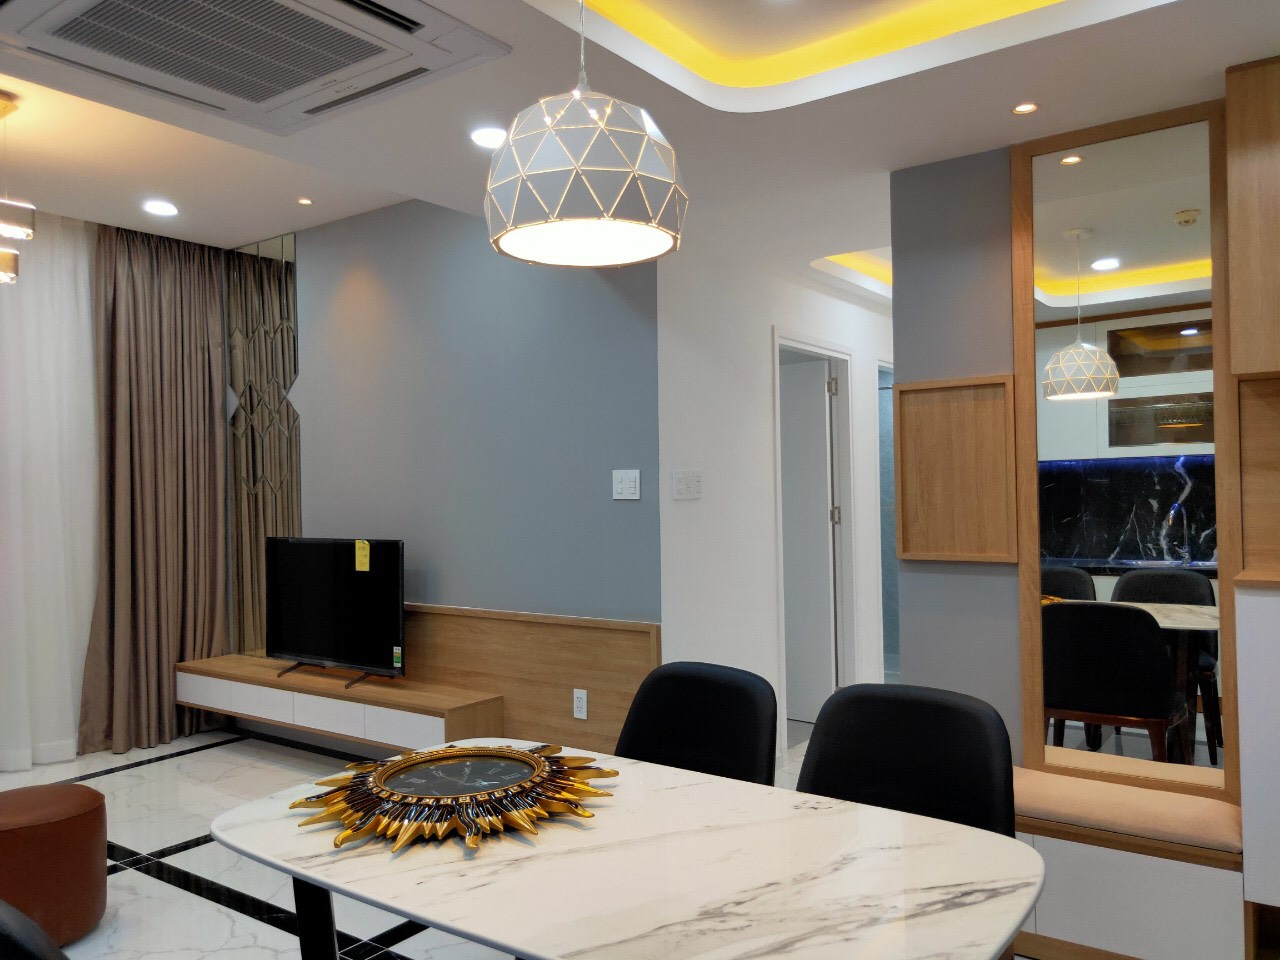 Căn hộ Phú Hoàng Anh bảng giá cho thuê & bán căn hộ mới nhất. LH 0947535251